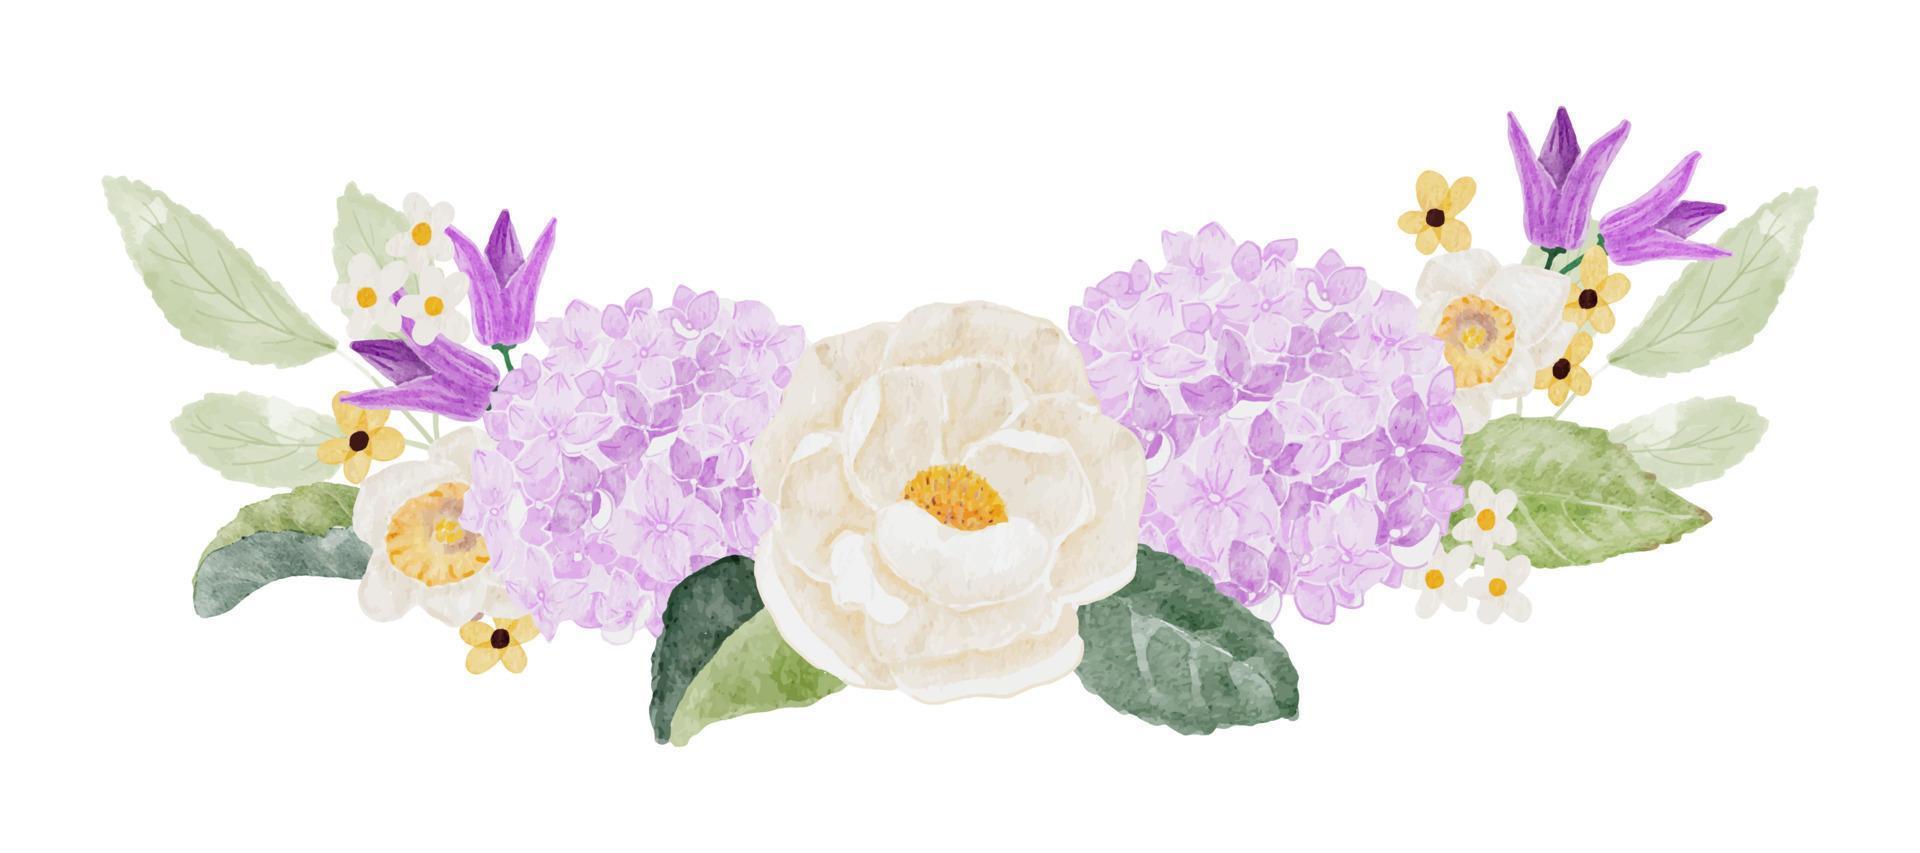 Aquarell weiße Kamelie und lila Hortensienblumenstrauß vektor